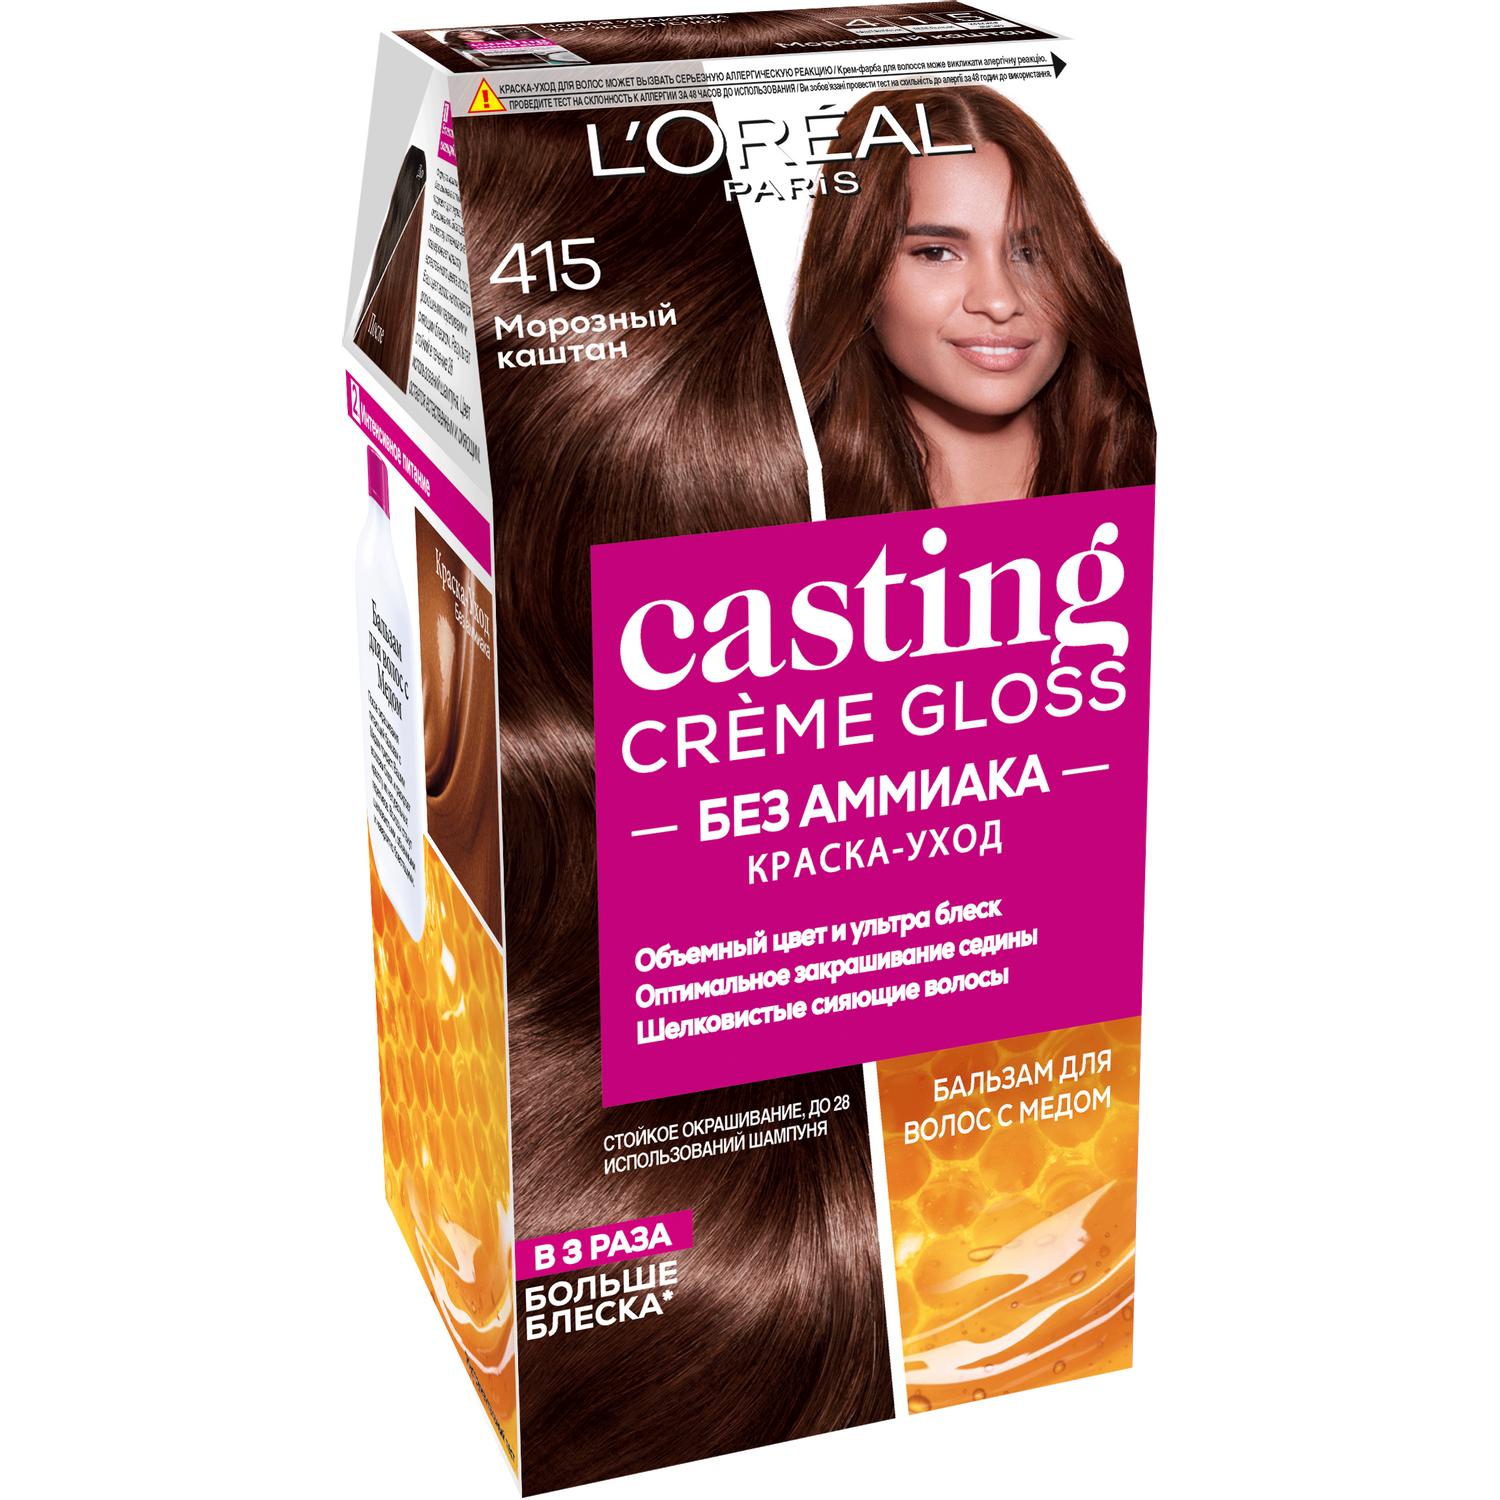 Краска L’Oreal Casting Creme Gloss 415 254 мл Морозный каштан (А3123800) краска для волос l oreal paris casting creme gloss 635 шоколадное пралине